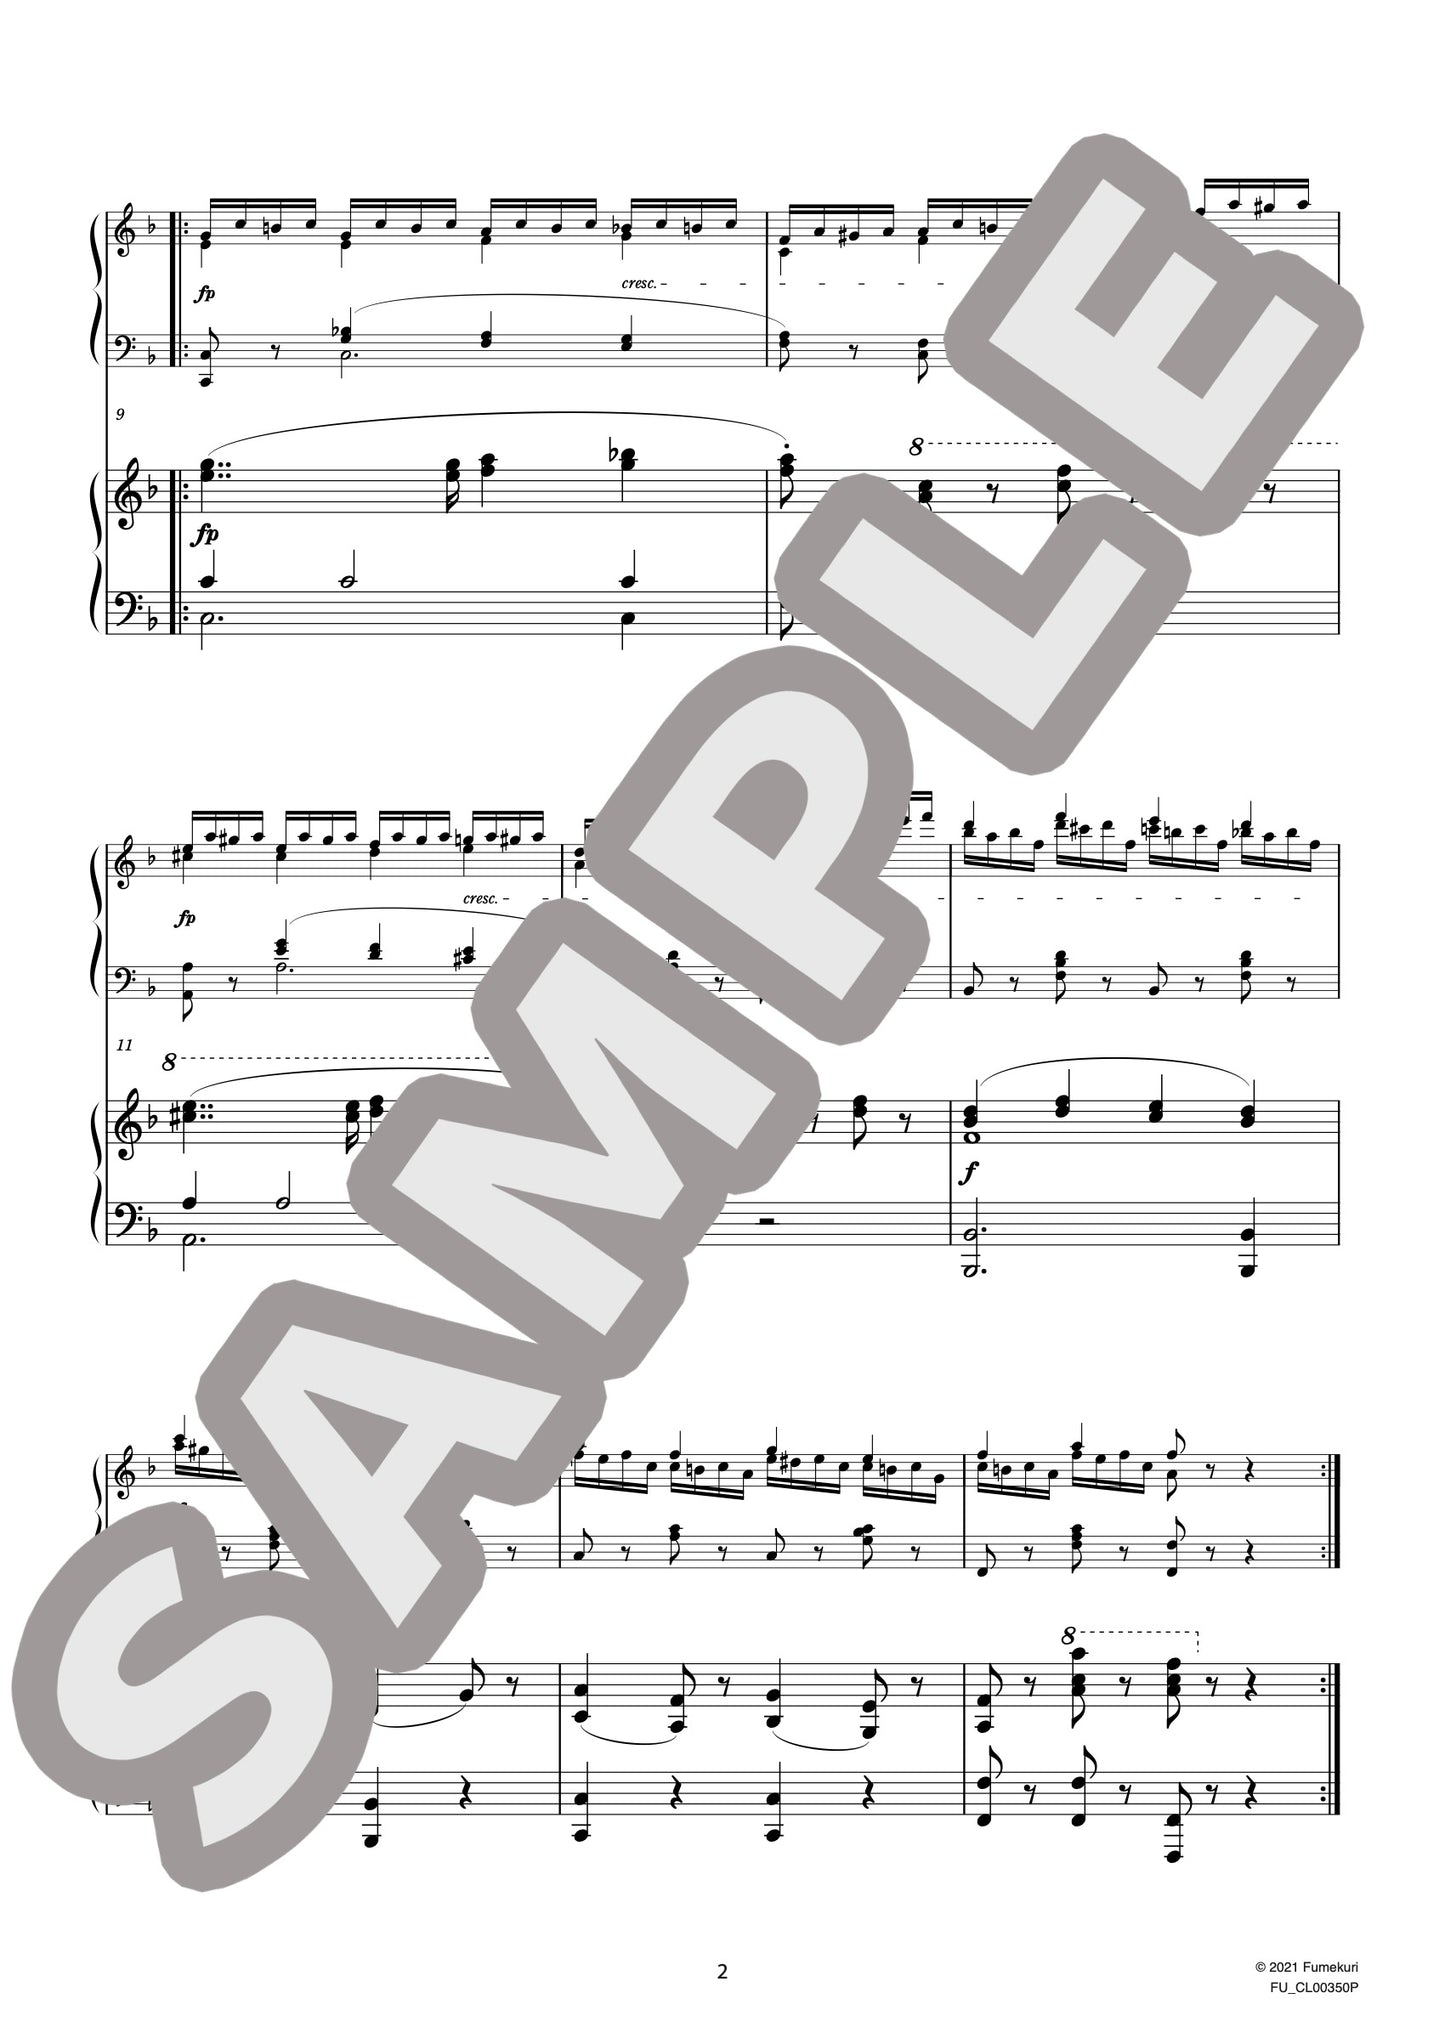 2台のピアノのための速度練習曲（40番練習曲）作品299b 第17番（CZERNY) / クラシック・オリジナル楽曲【中上級】